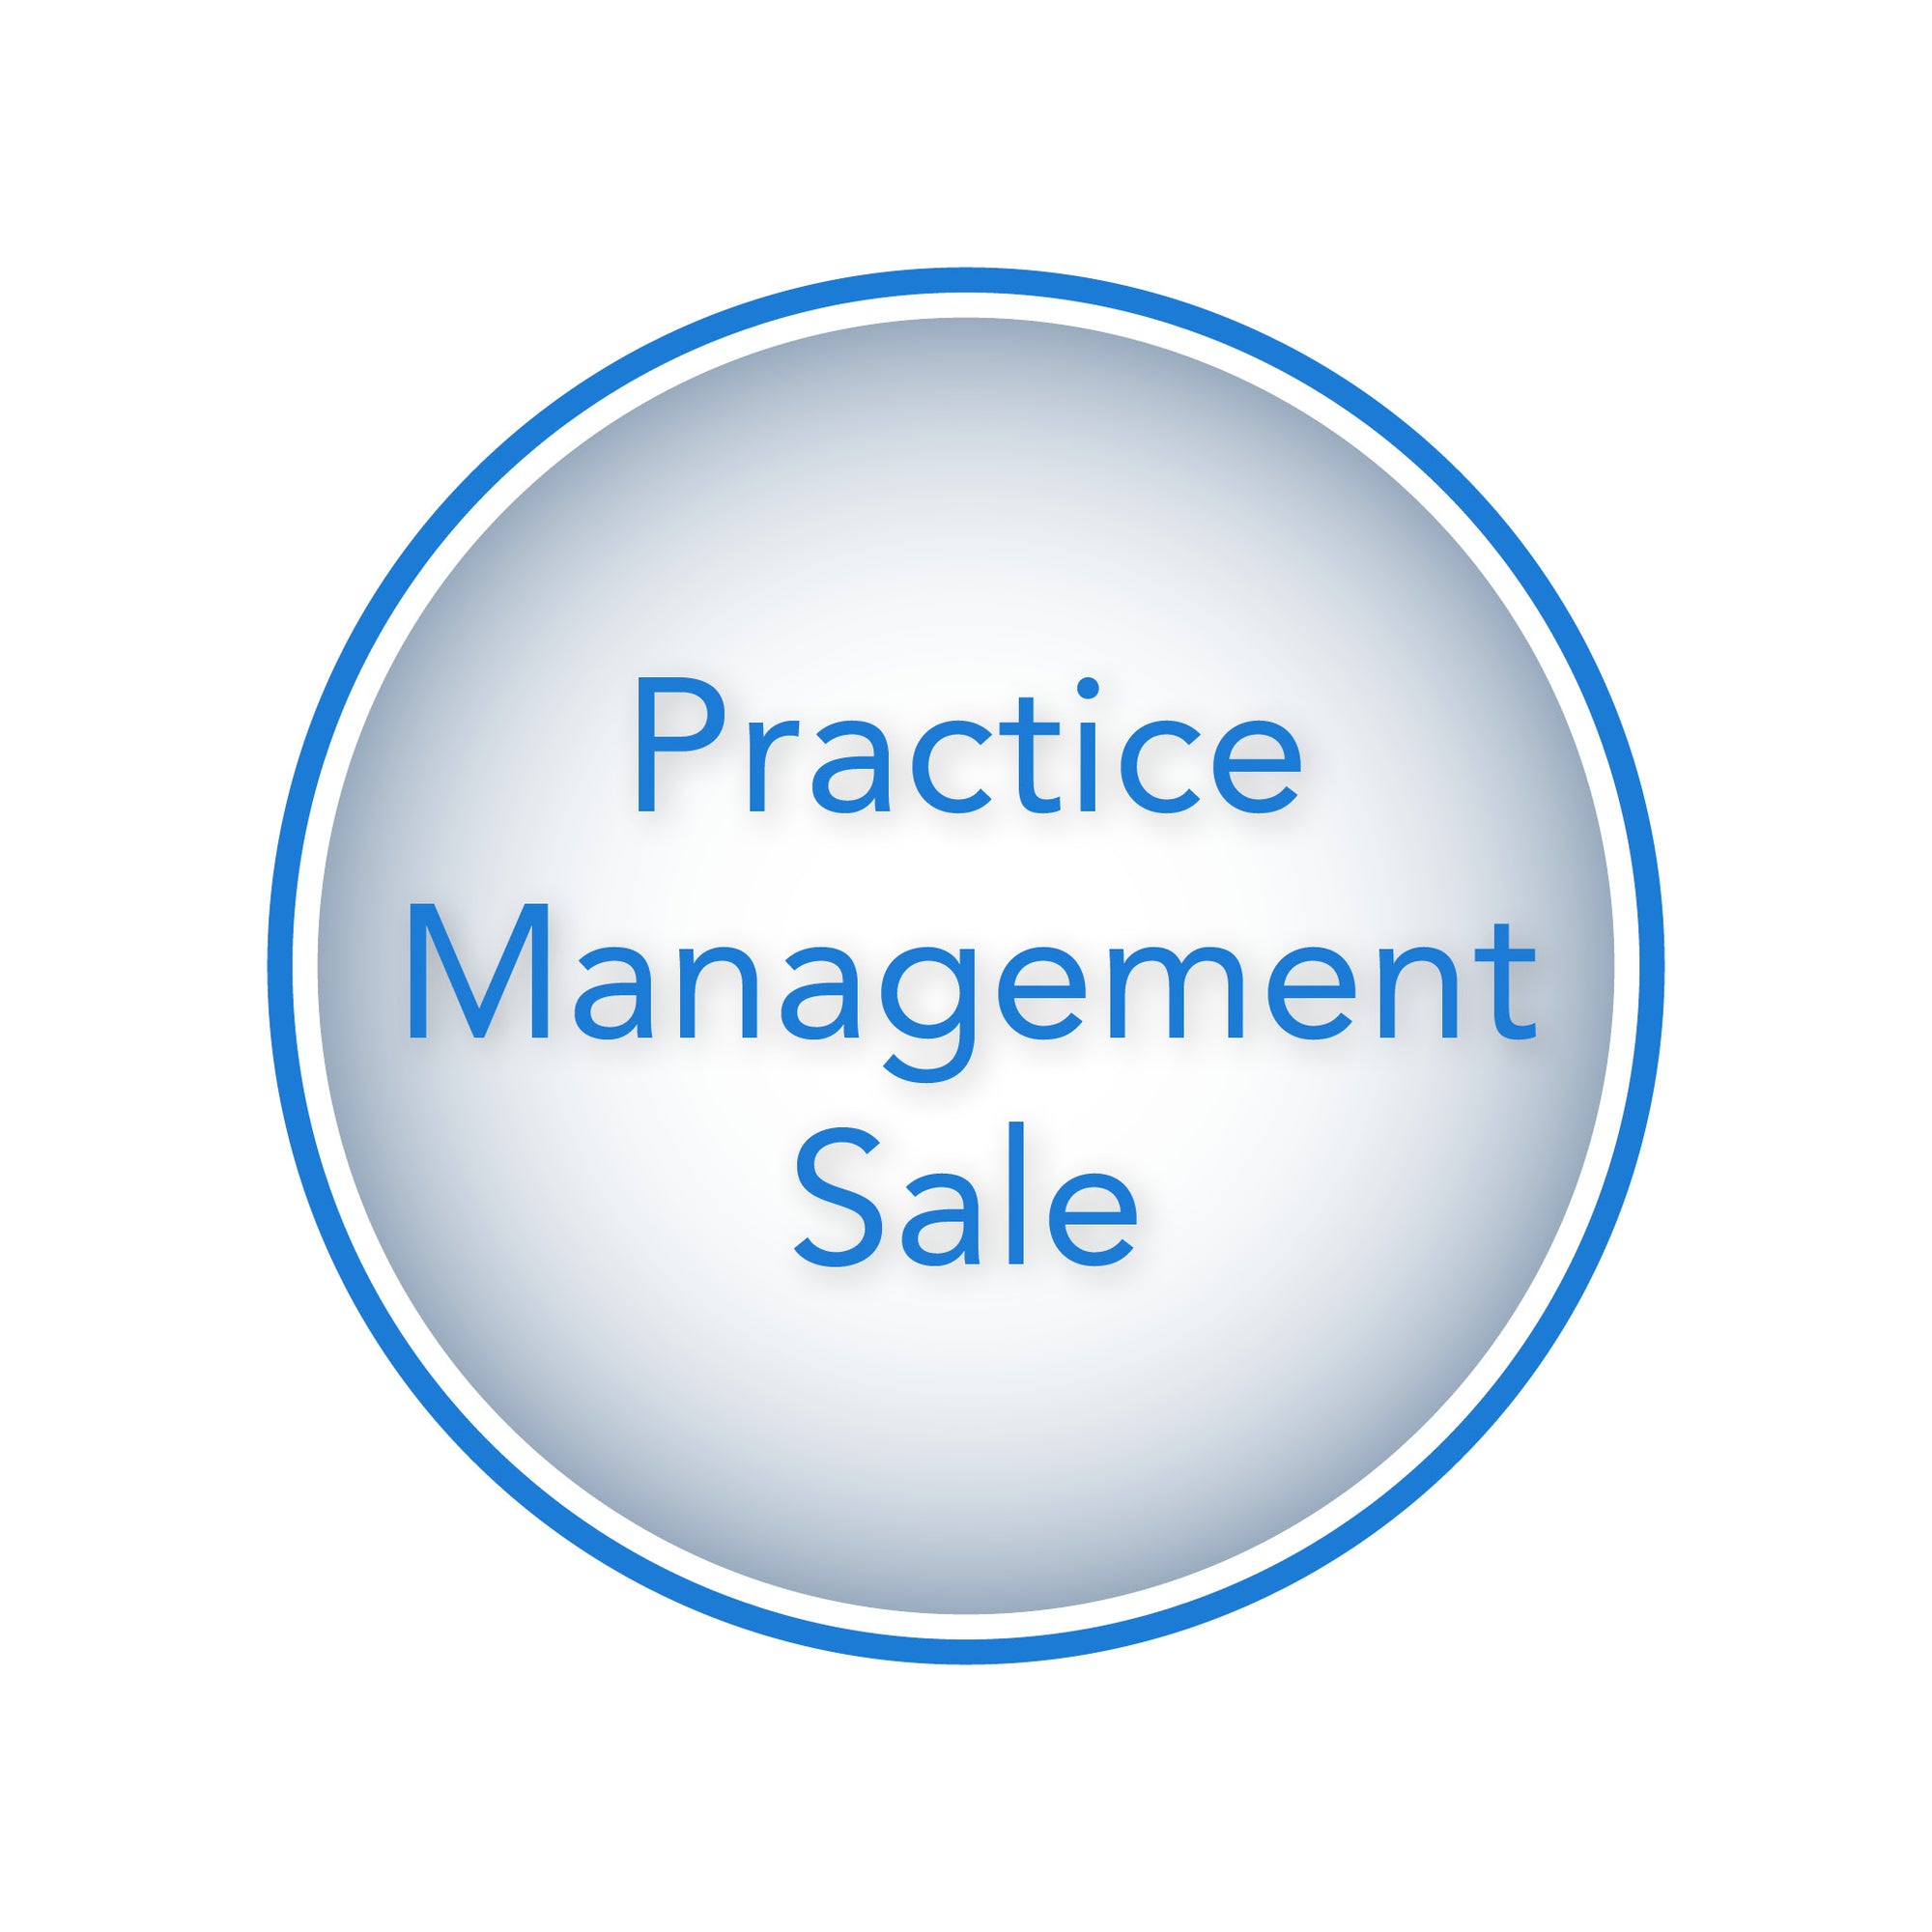 Practice Management Sale